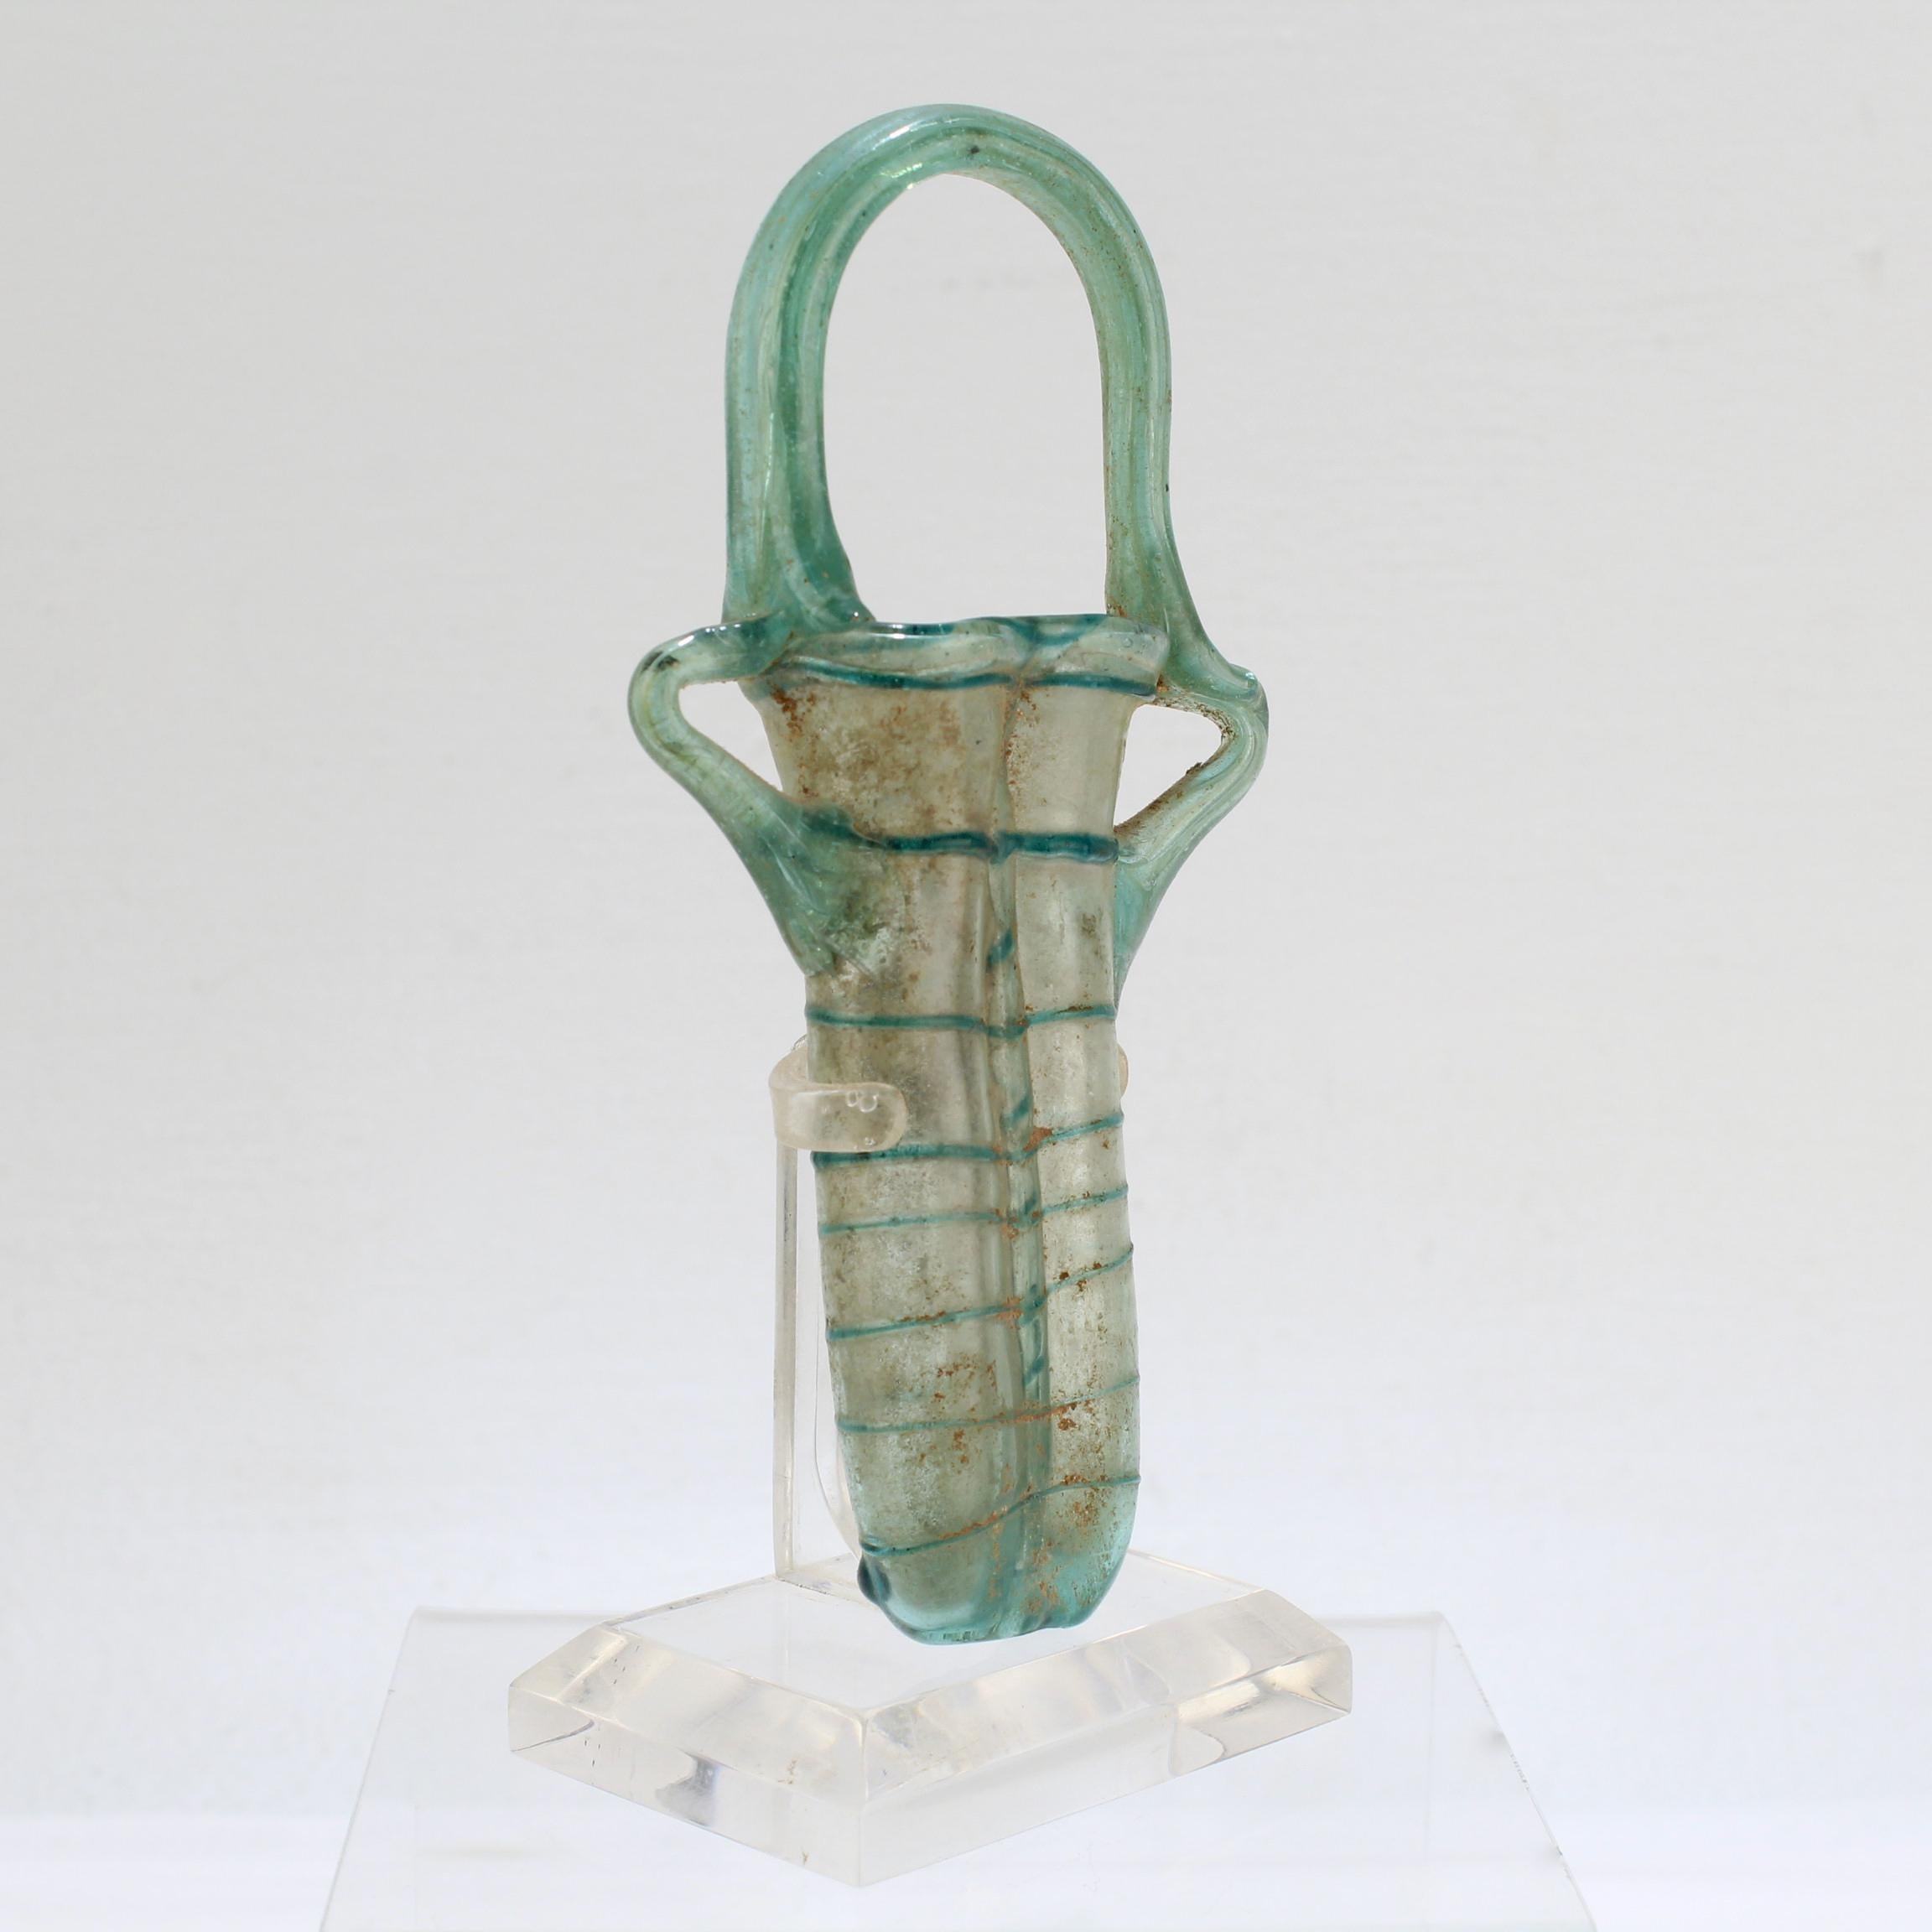 Doppel-Unguentarium aus antikem römischem Glas in Klar- und Aquafarbenem Glas (Geblasenes Glas)